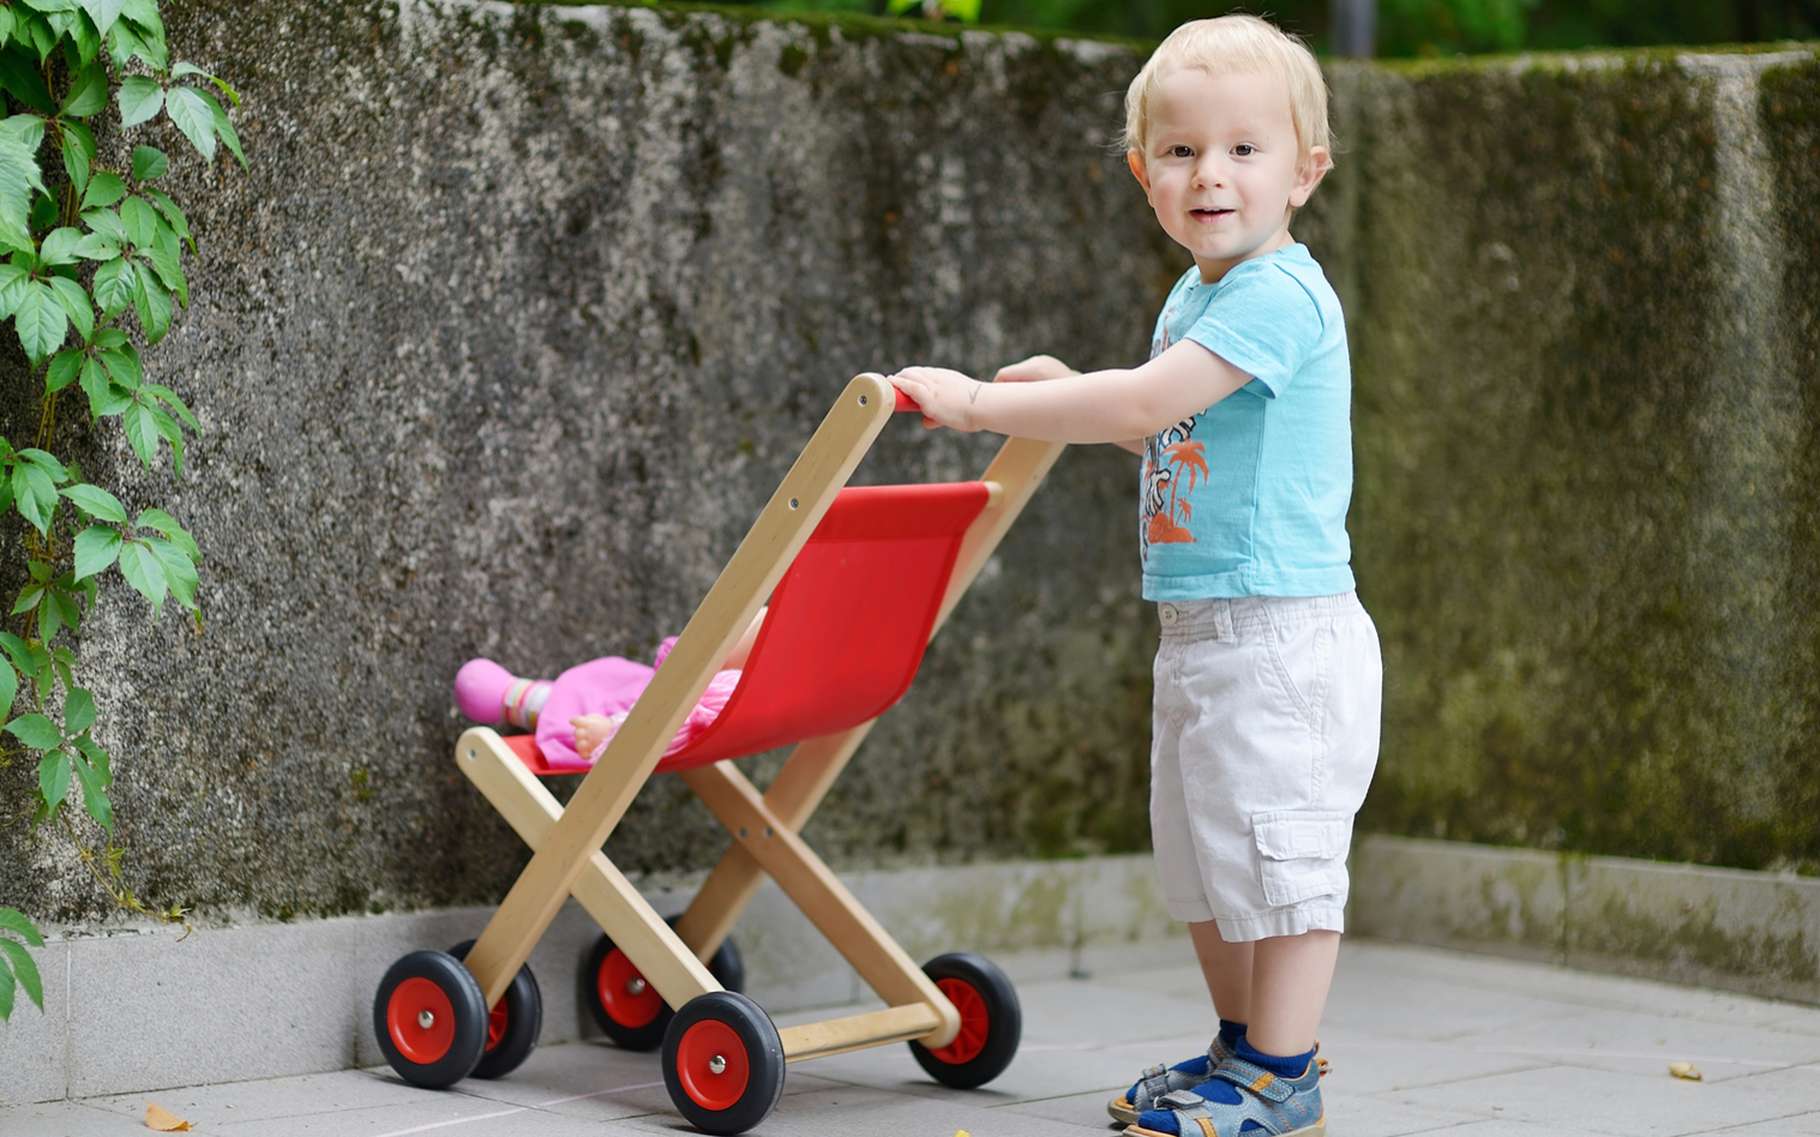 Les petits garçons préfèrent les objets sociaux, comme les poupées, aux jouets non sociaux, comme les voitures. © MNStudio, Shutterstock